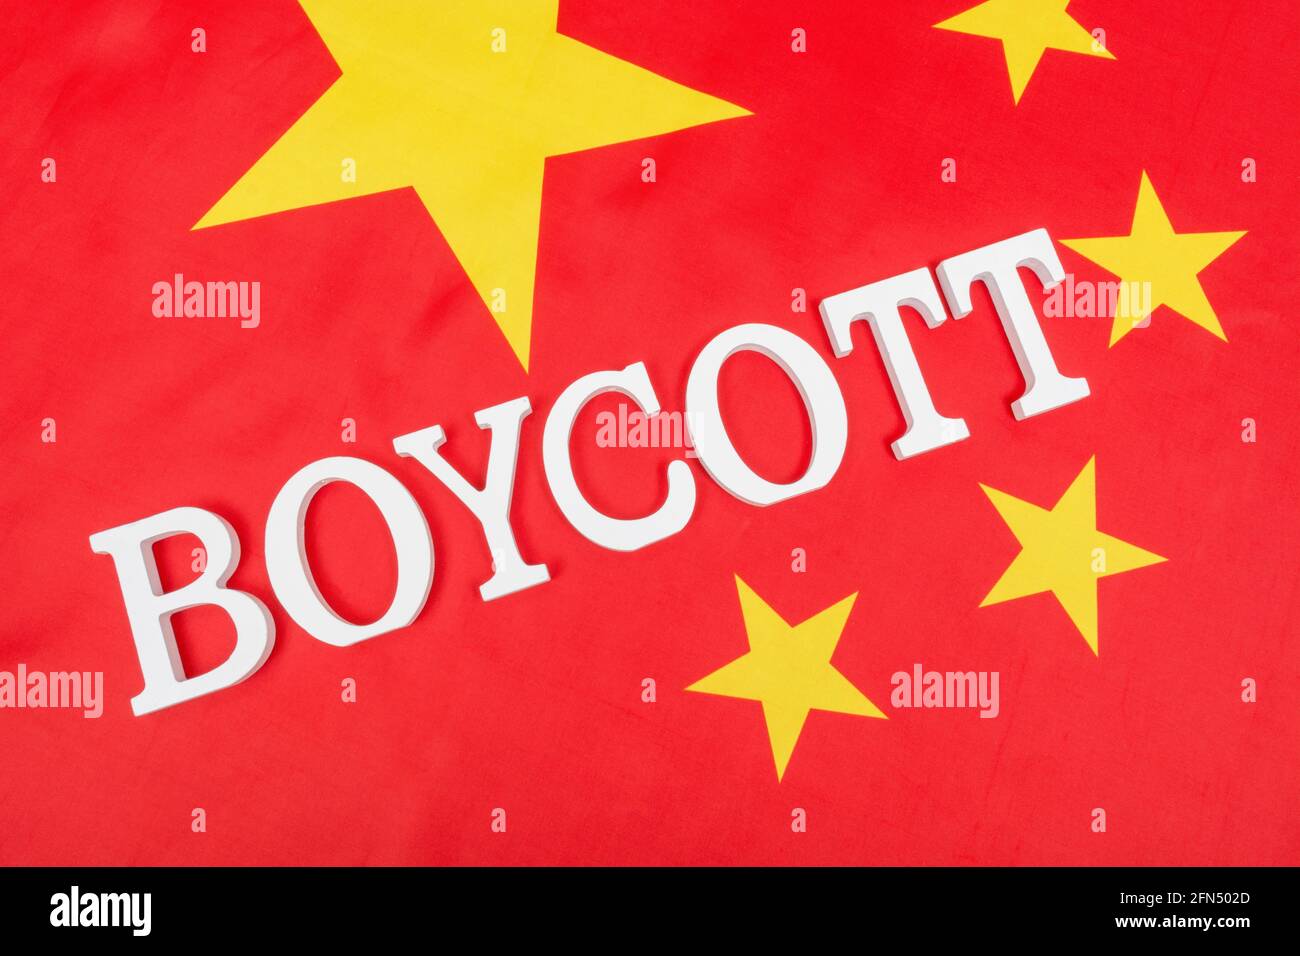 Chinesische Flagge mit Buchstaben Boykott. Wegen Verbot chinesischer Produkte und Waren, Boykott der Olympischen Winterspiele 2022, China-Boykott taiwanesischer Produkte. Stockfoto